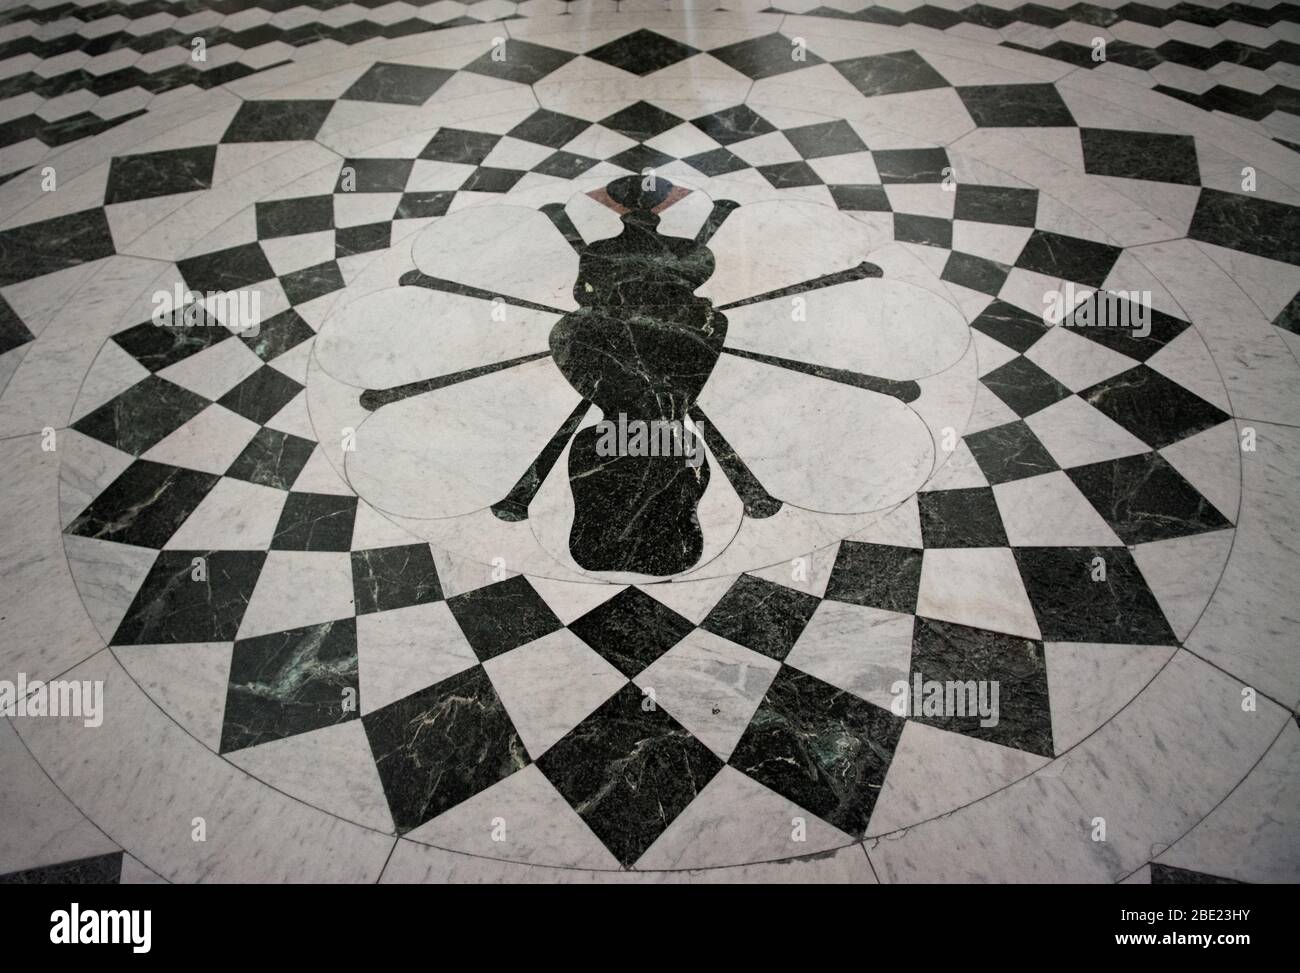 Pavimento in marmo mosaico figura piastrelle bianche e nere all'interno della Cattedrale di Messina Foto Stock